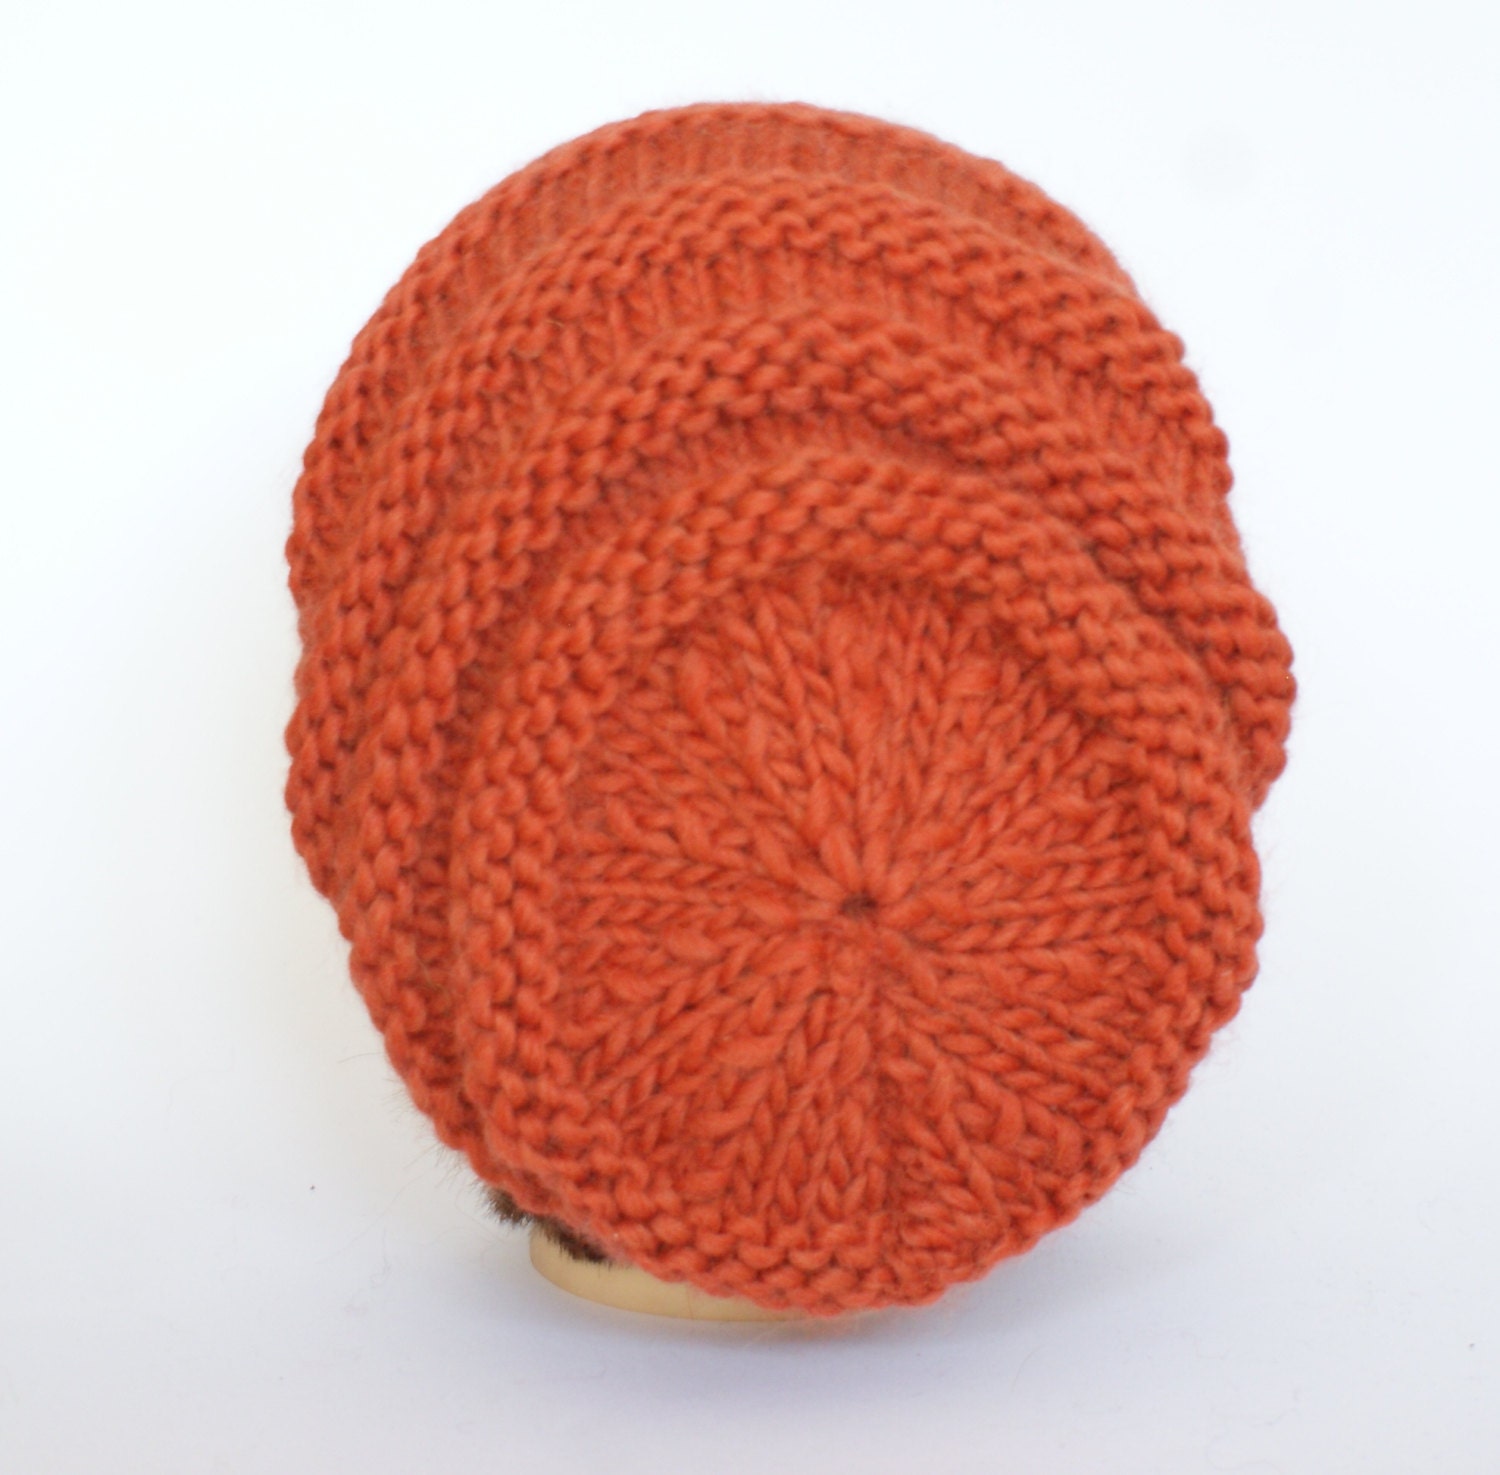 Bobble Hat in Burnt Orange Chunky Yarn With Grey Pom Pom 